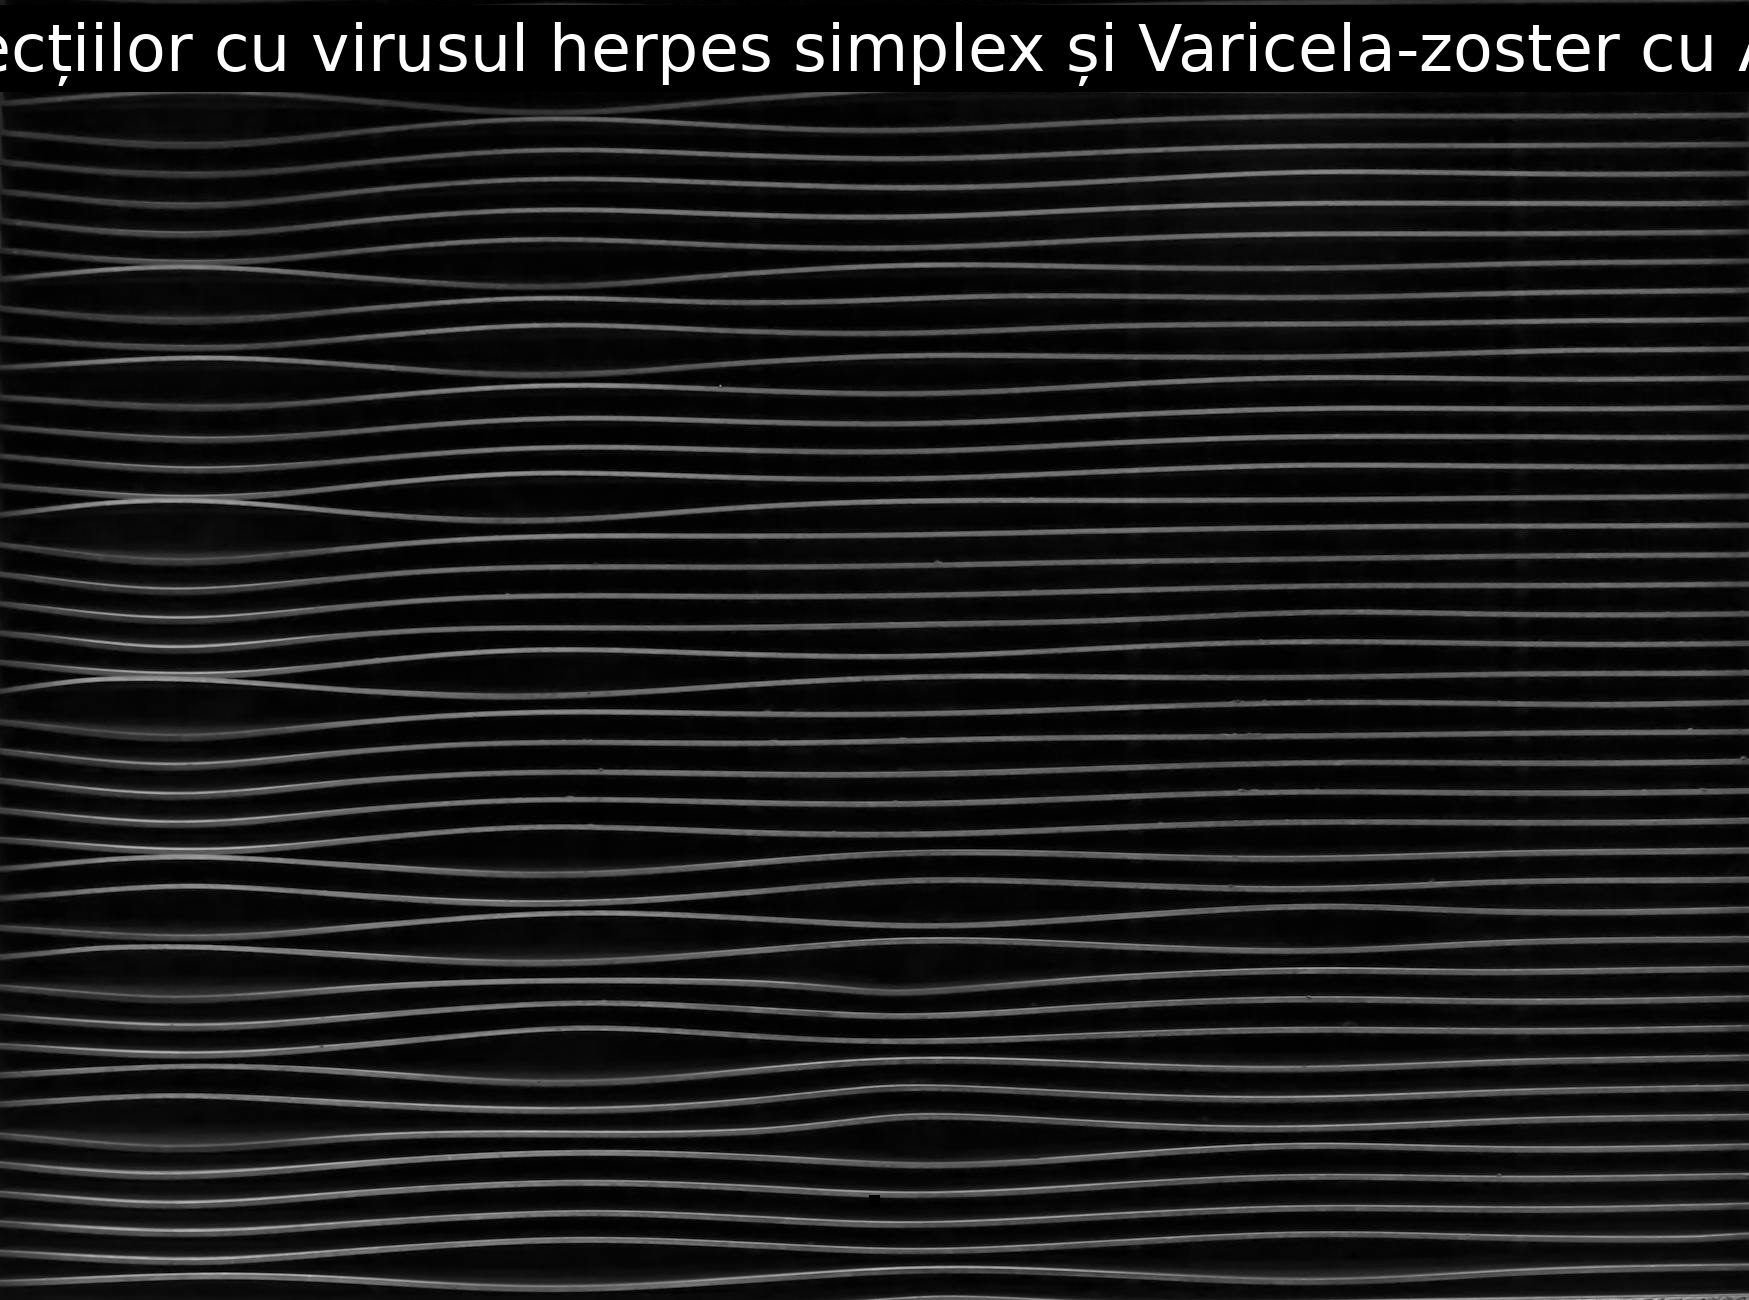 Tratamentul infecțiilor cu virusul herpes simplex și Varicela-zoster cu Arbivir Prospect.